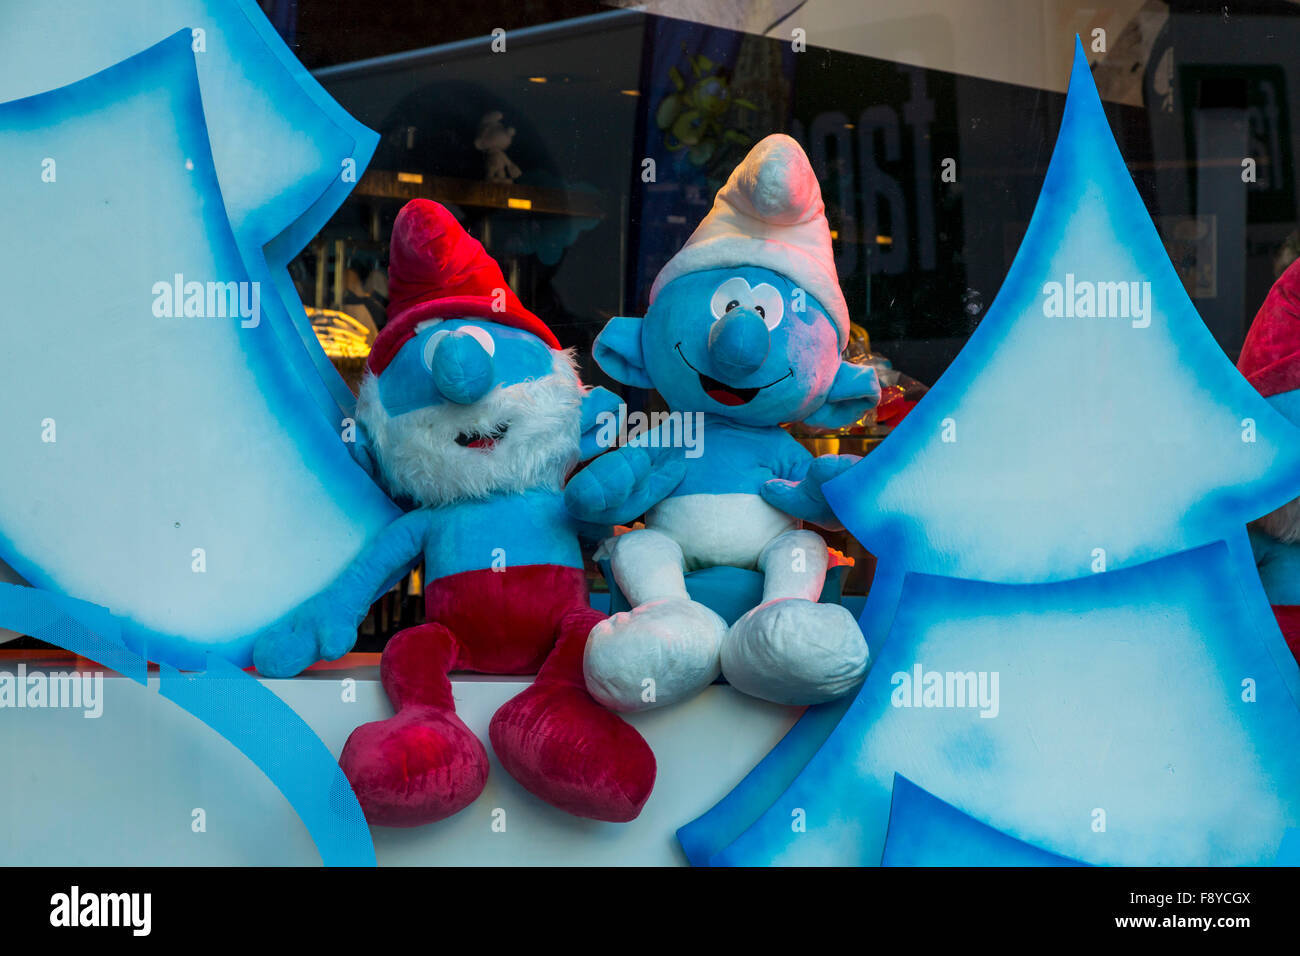 Noël Décoration d'une boutique avec des Schtroumpfs bleu, Bruxelles, Belgique Banque D'Images